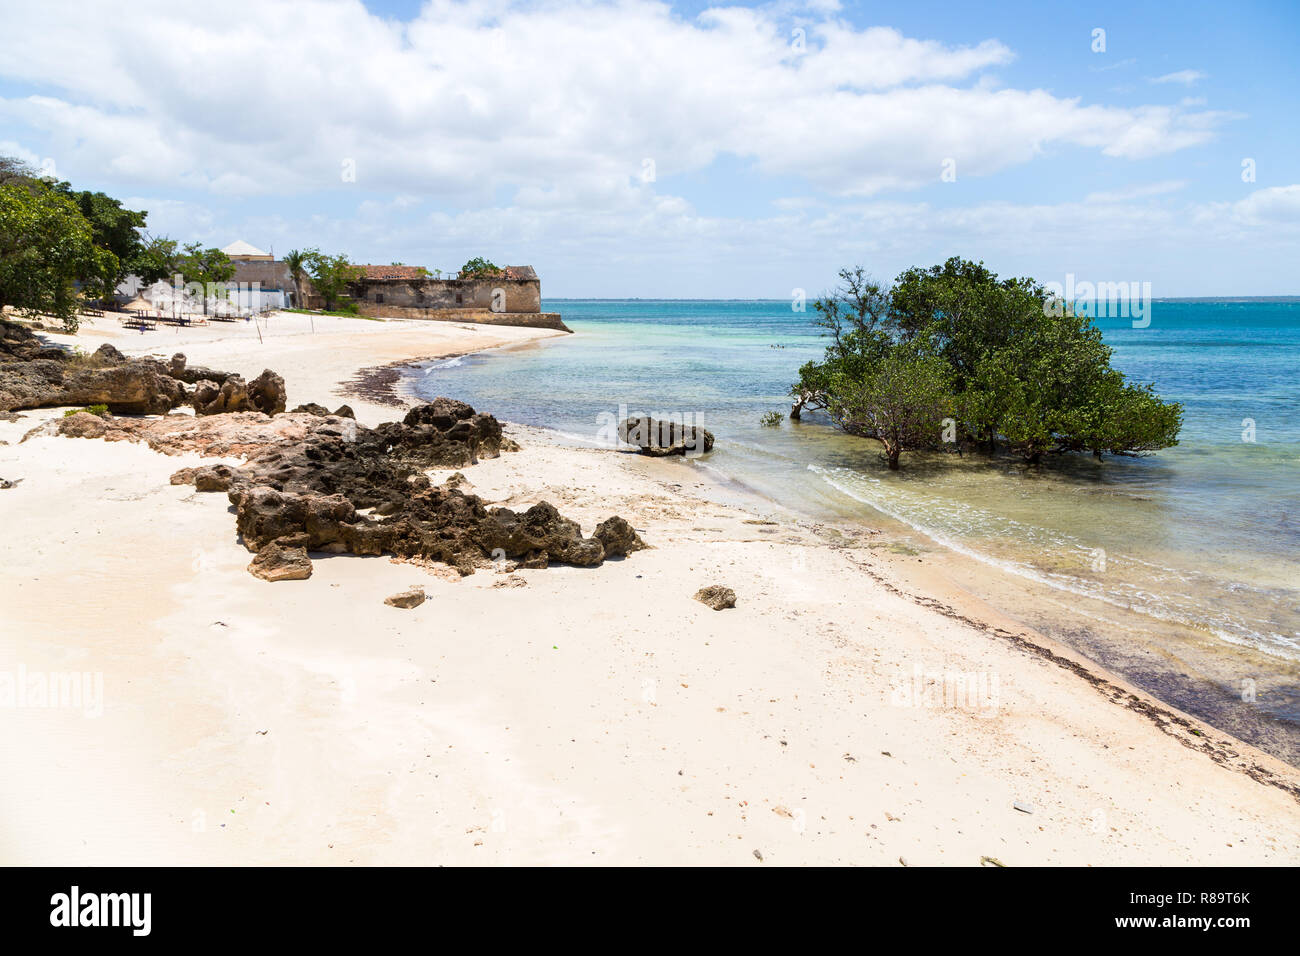 Leere Sandstrand von Mosambik Insel (Ilha de Mocambique), Mangroven und Reste einer Colonial House, Indischer Ozean. Nampula. Portugiesisch Ostafrika. Stockfoto